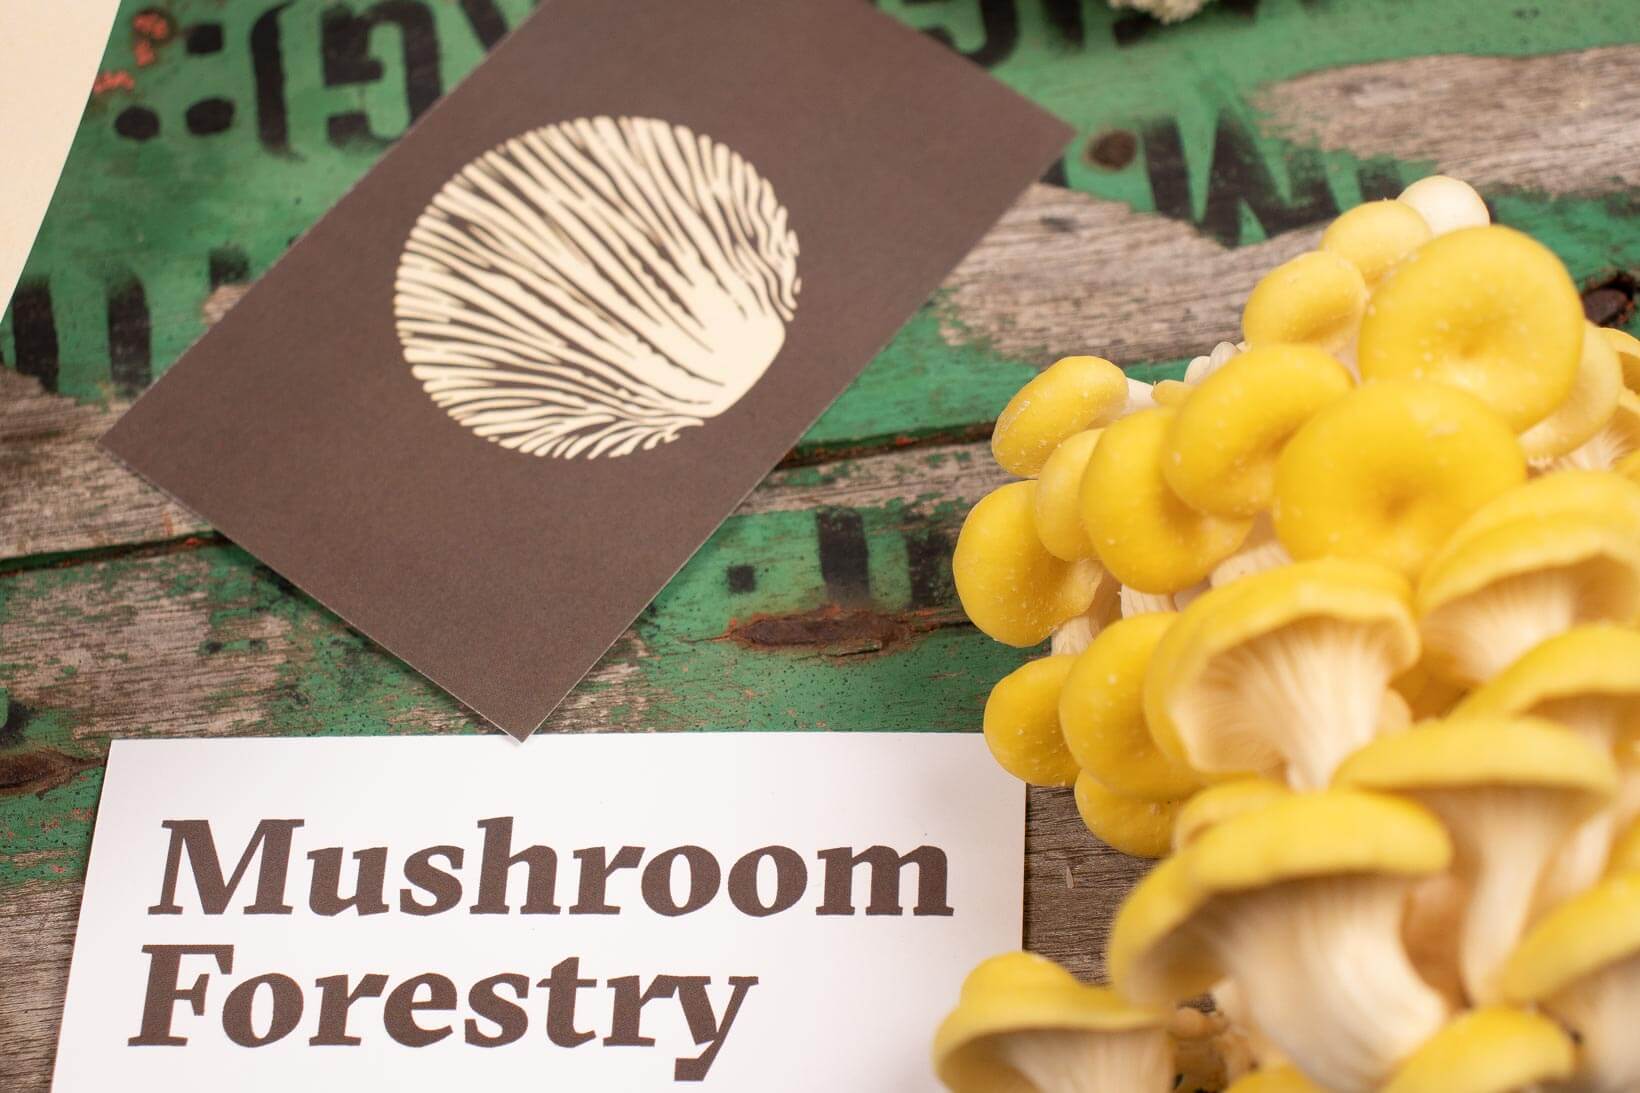 Detalle de tarjetas de visita con la nueva identidad corporativa de la marca australiana de setas Mushroom Forestry